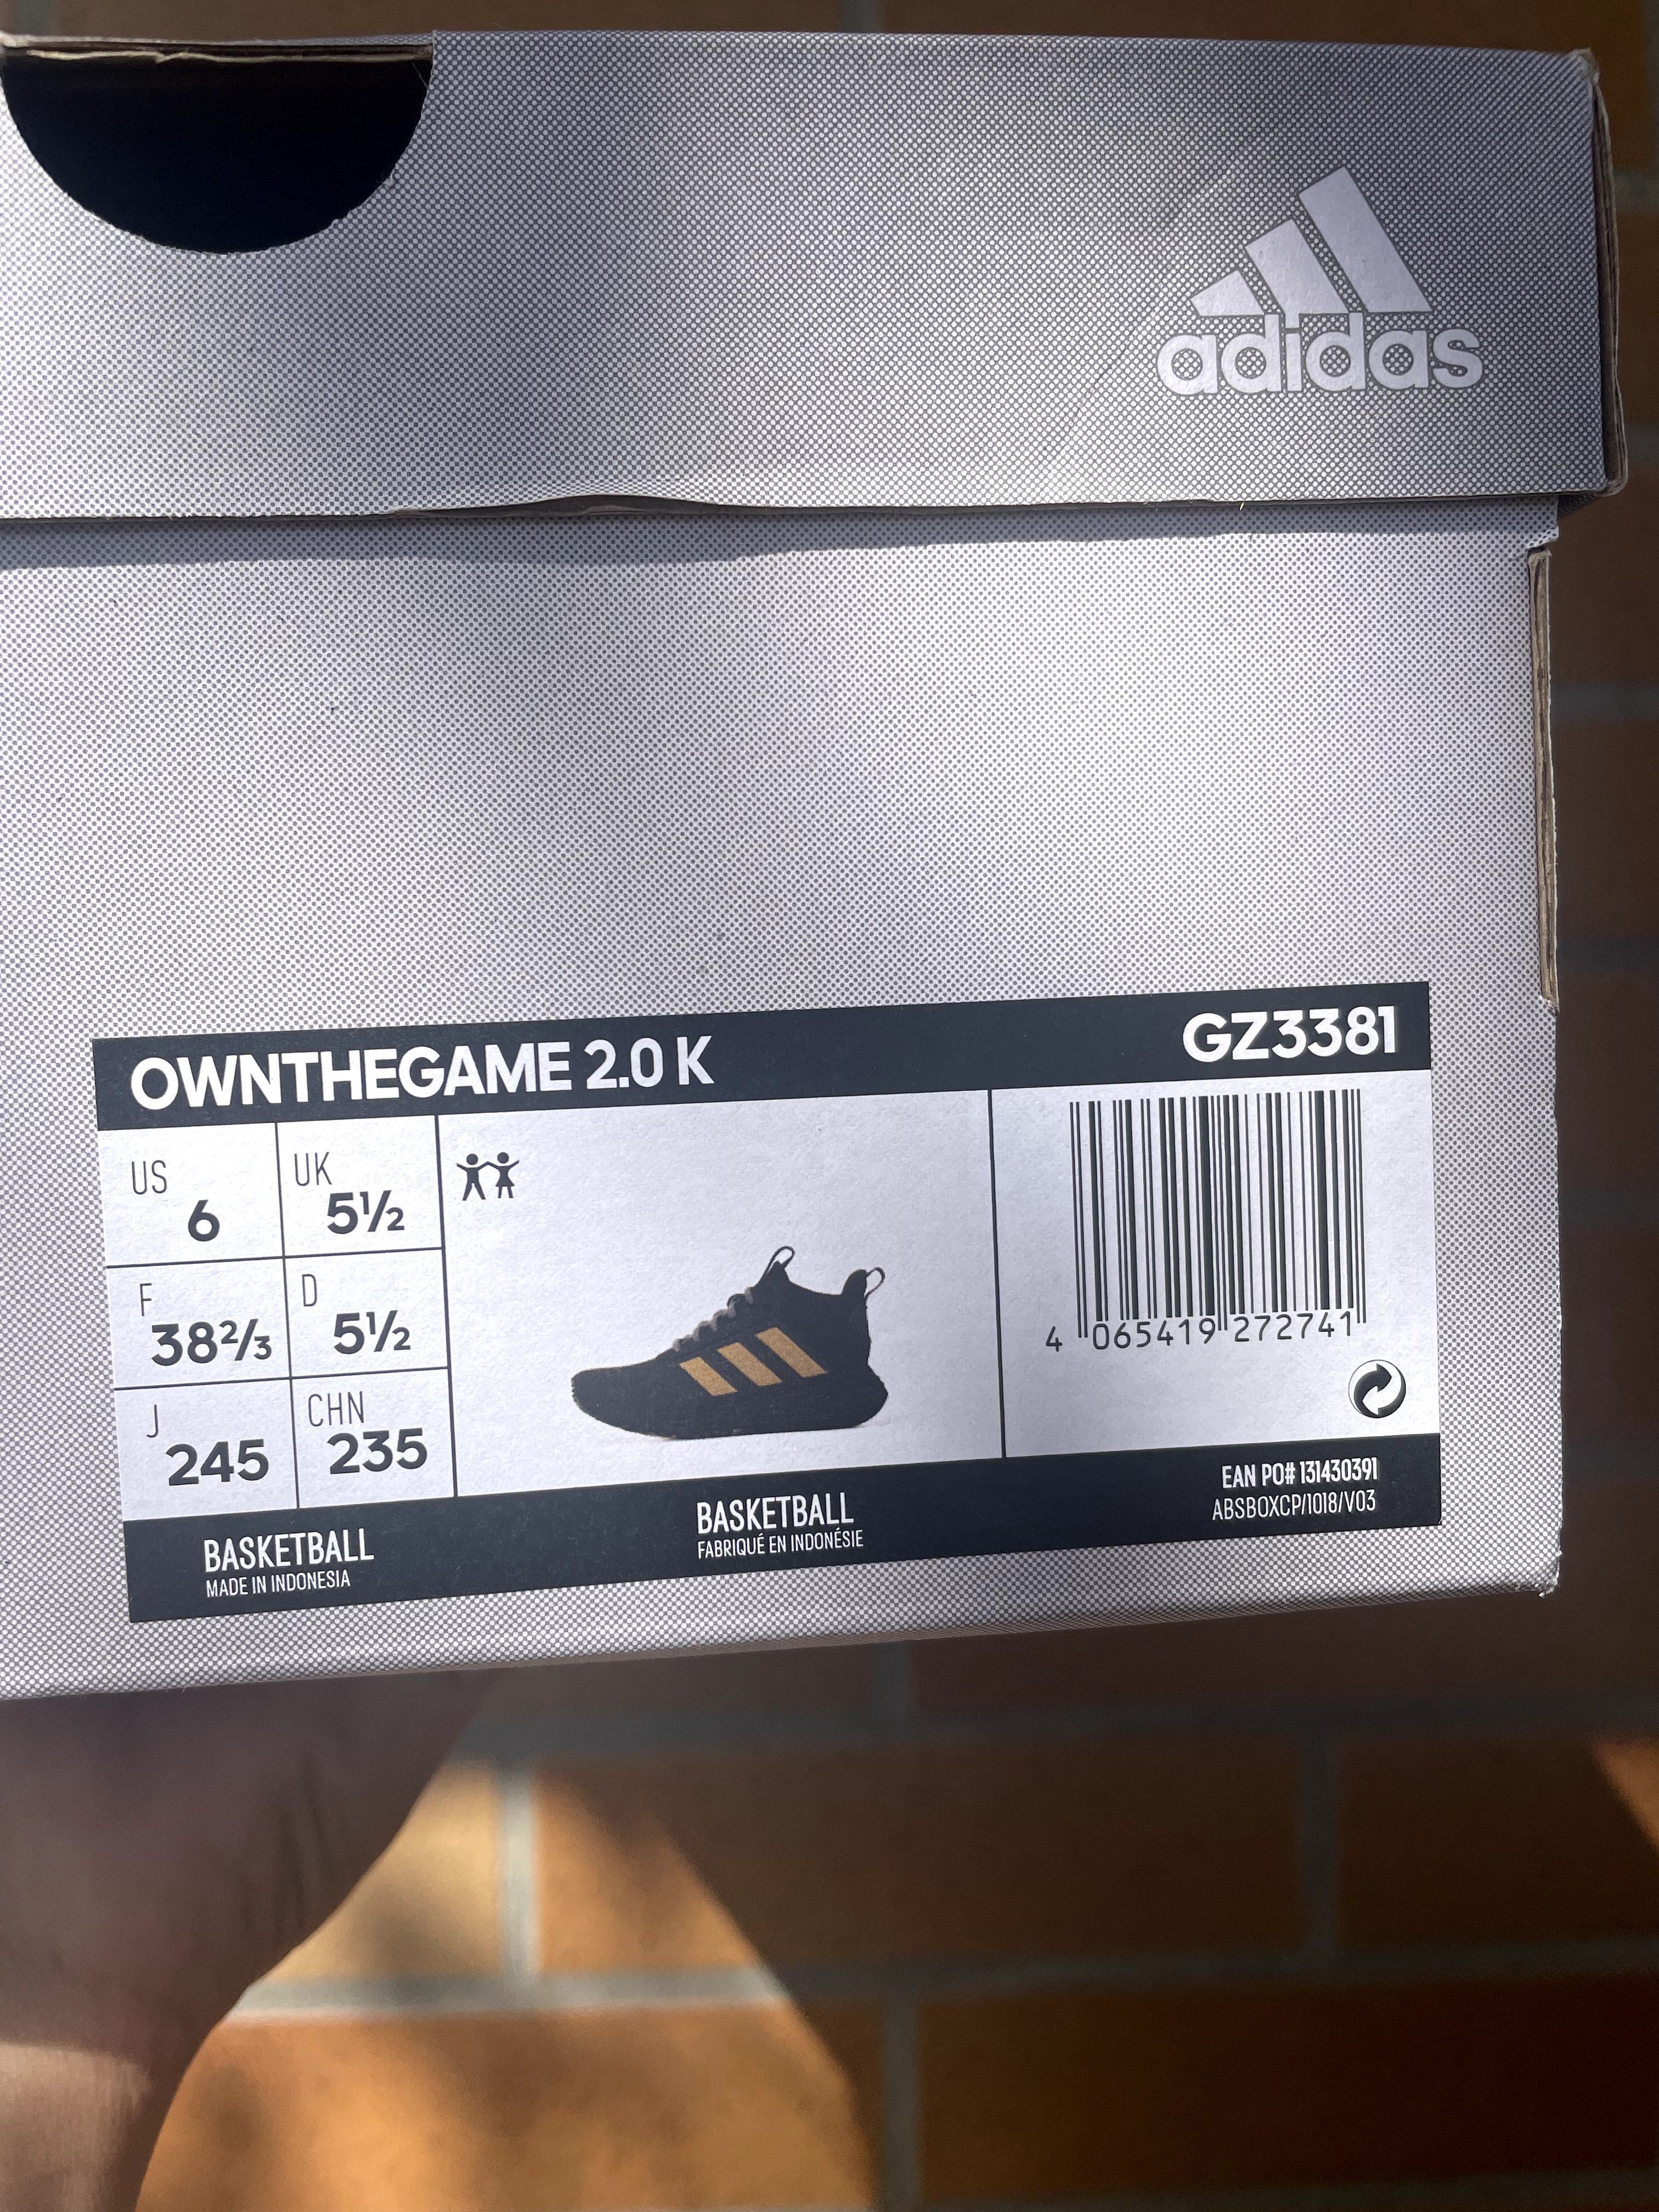 Adidas Ownthegame 2.0